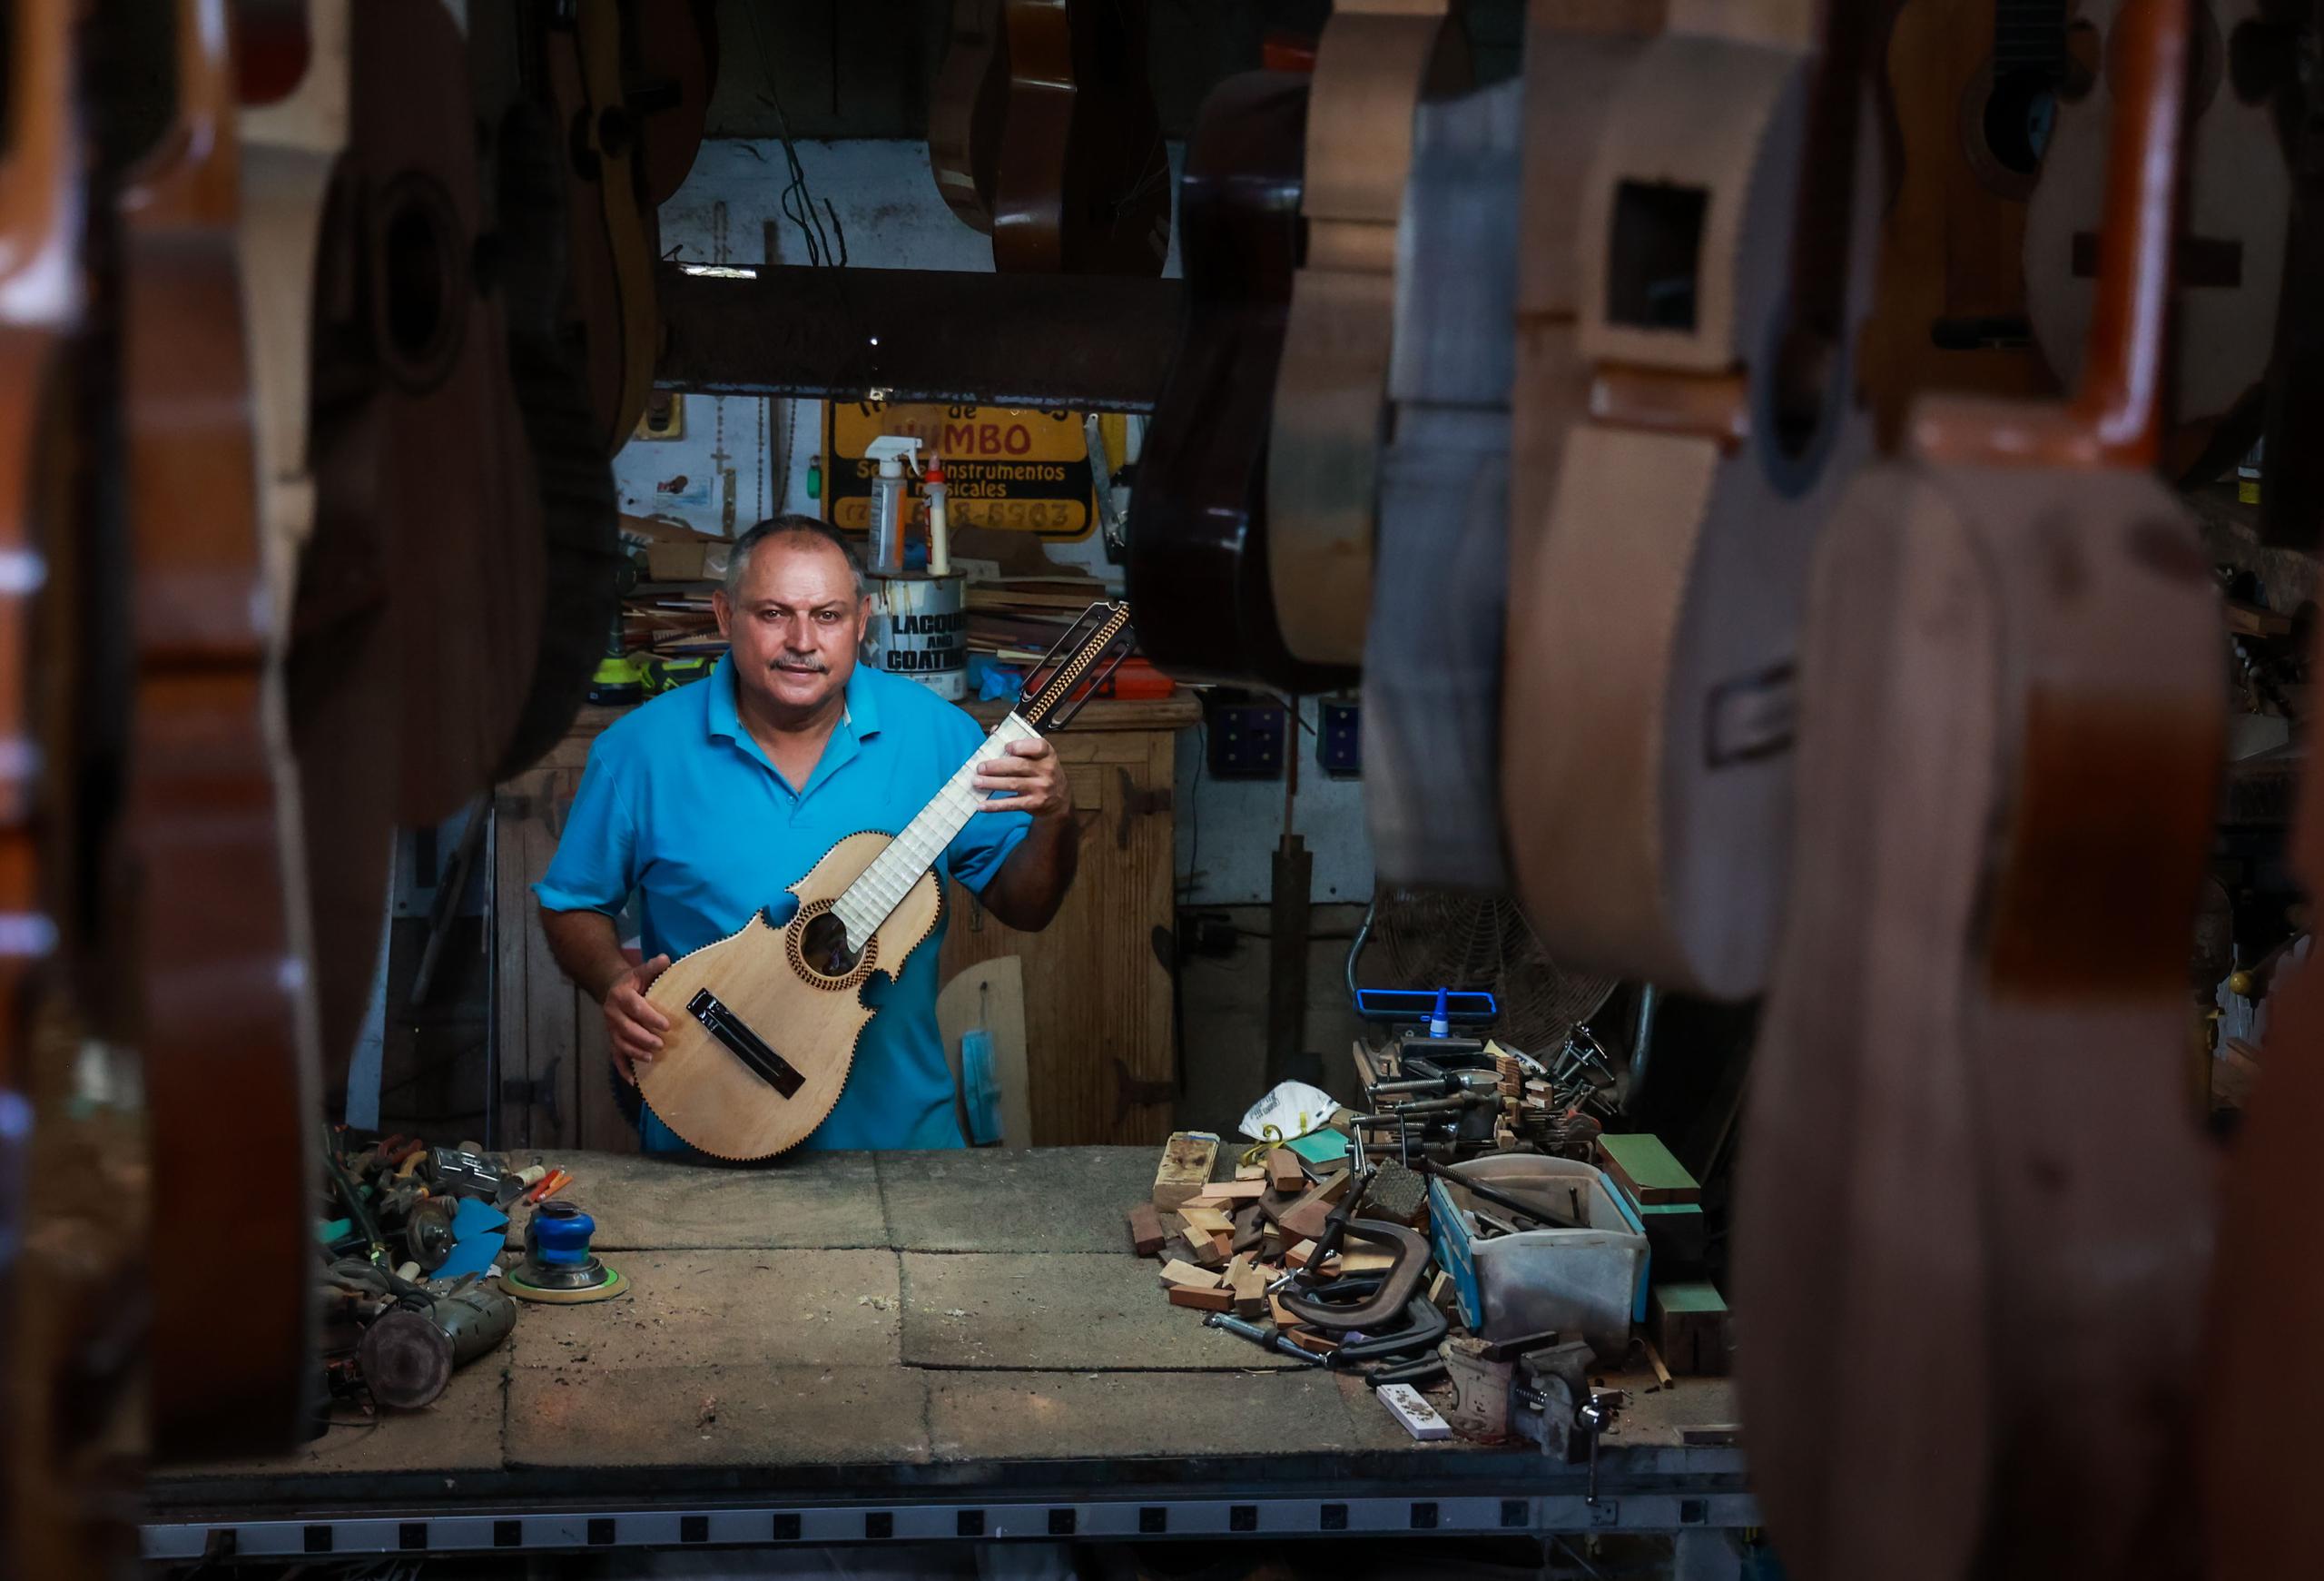 El artesano trabaja con distintas maderas de acuerdo al efecto sonoro óptimo para cada instrumento.